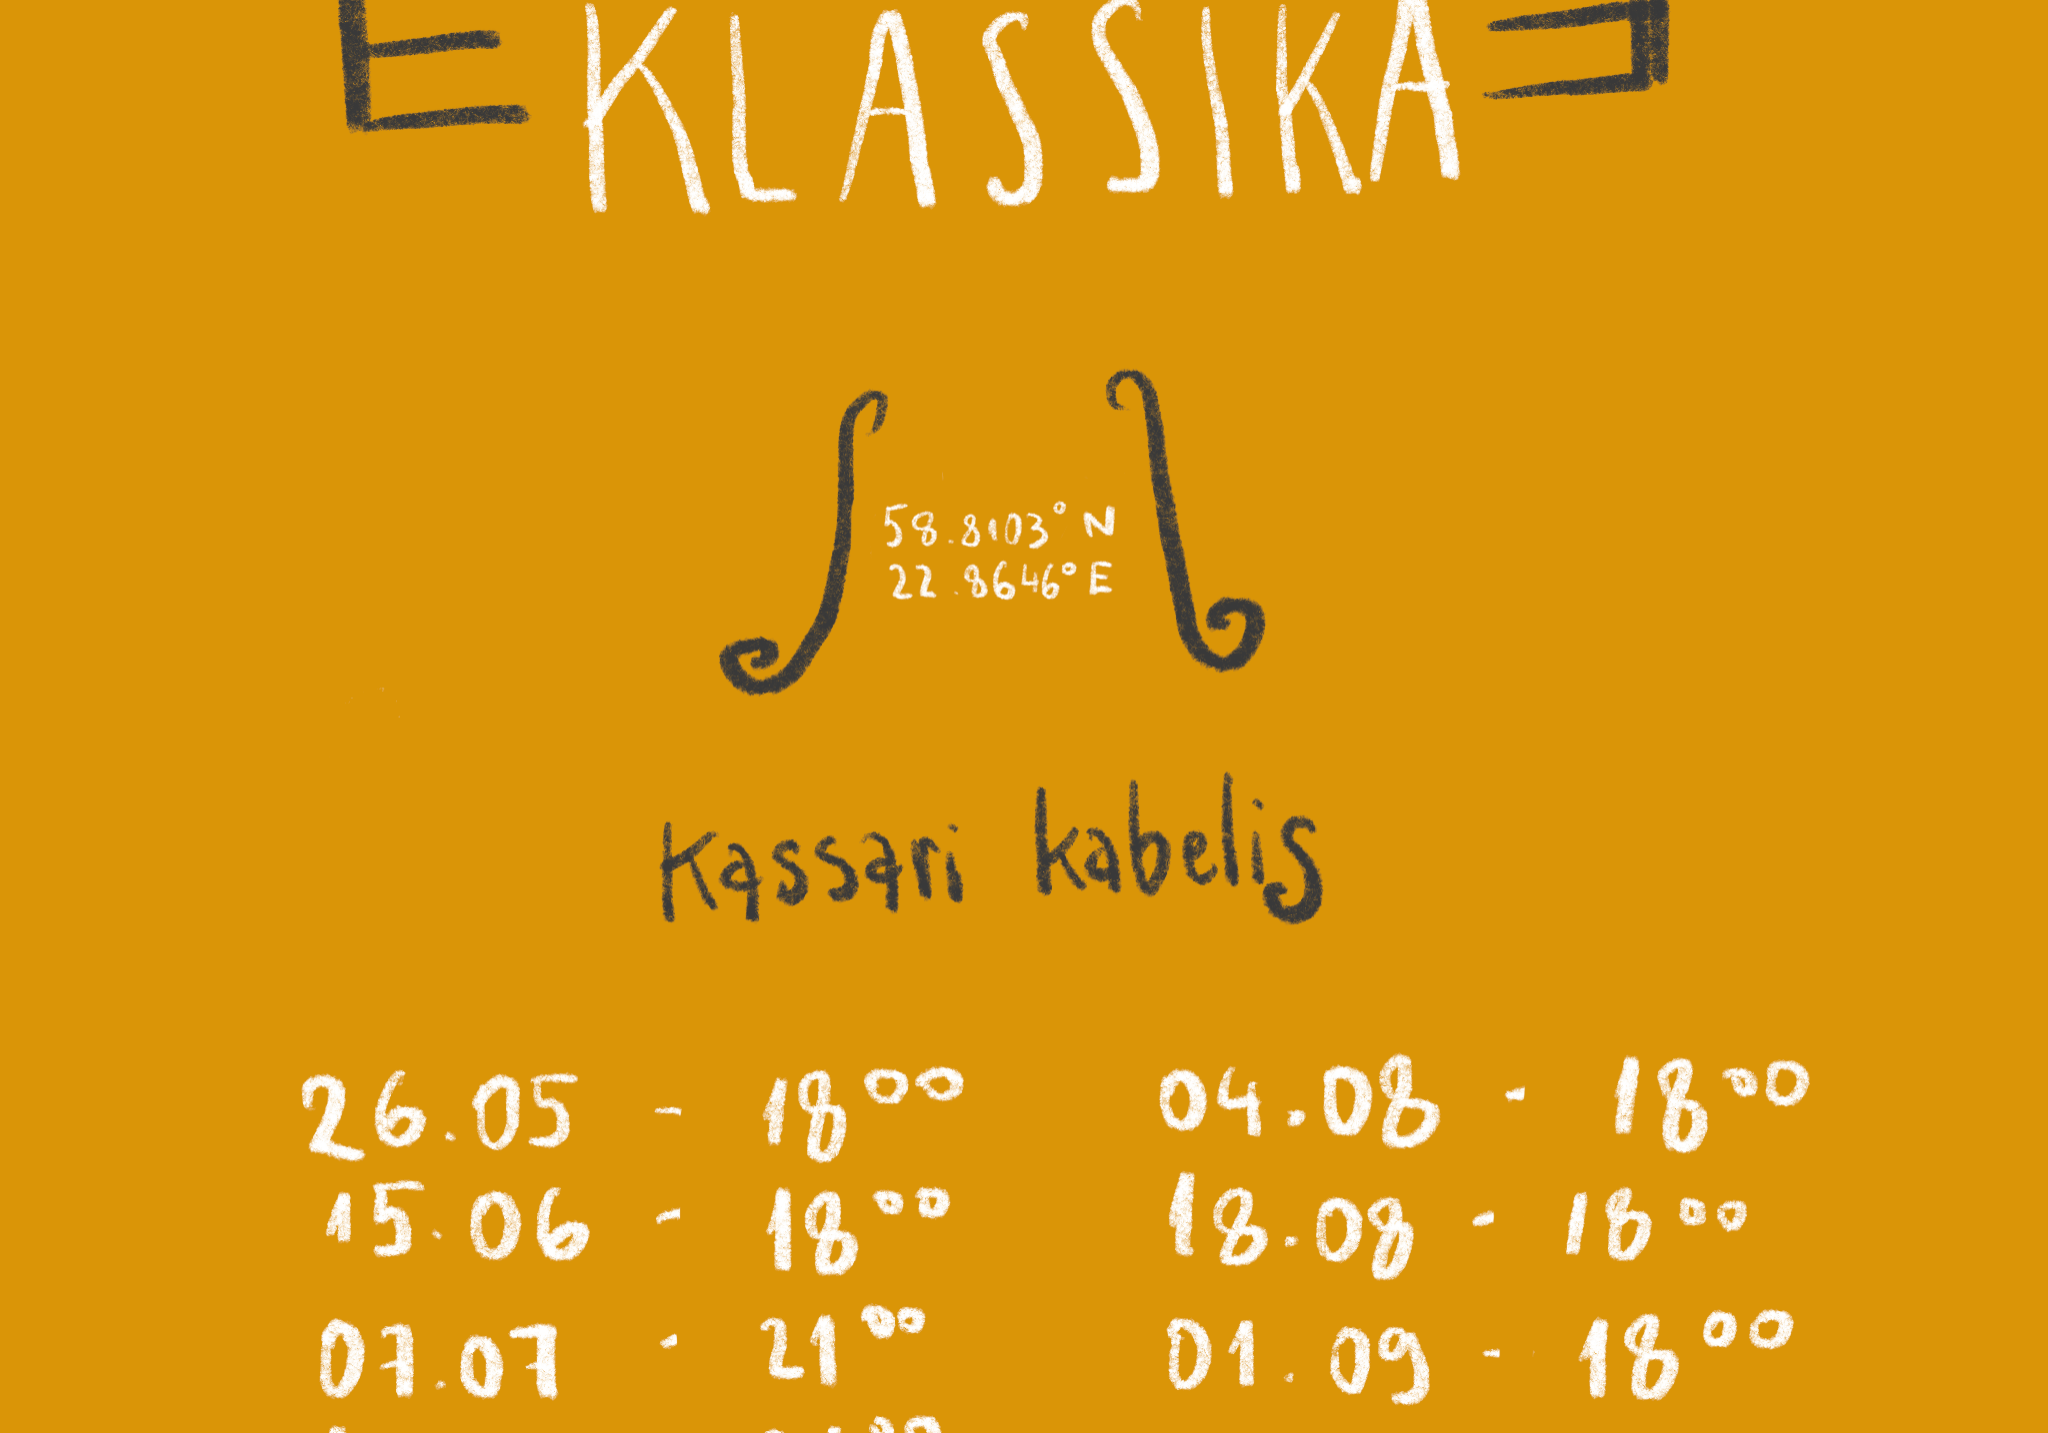 Kassari Klassika 2023 - (Hiiumaa.ee)